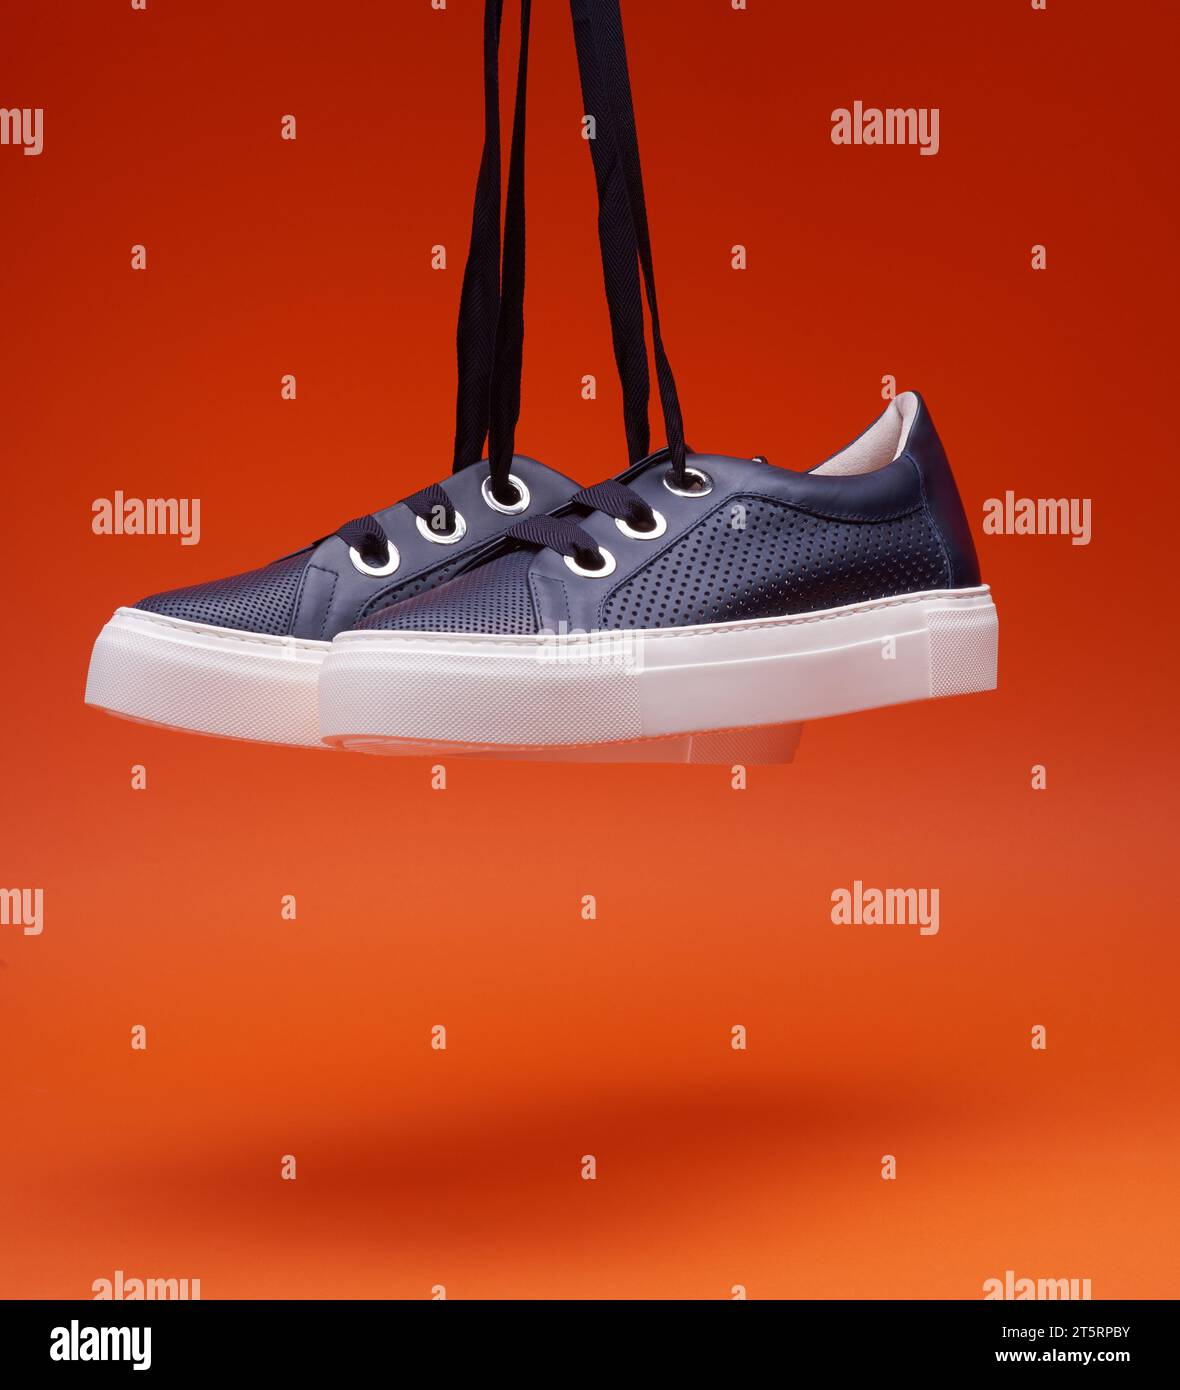 Stilvolle, legere, marineblaue Sneakers, die vor einem leuchtend orangefarbenen Hintergrund hängen. Perforiertes Leder, dicke weiße Sohle, breite Schnürsenkel. Freizeitschuhe, Stockfoto